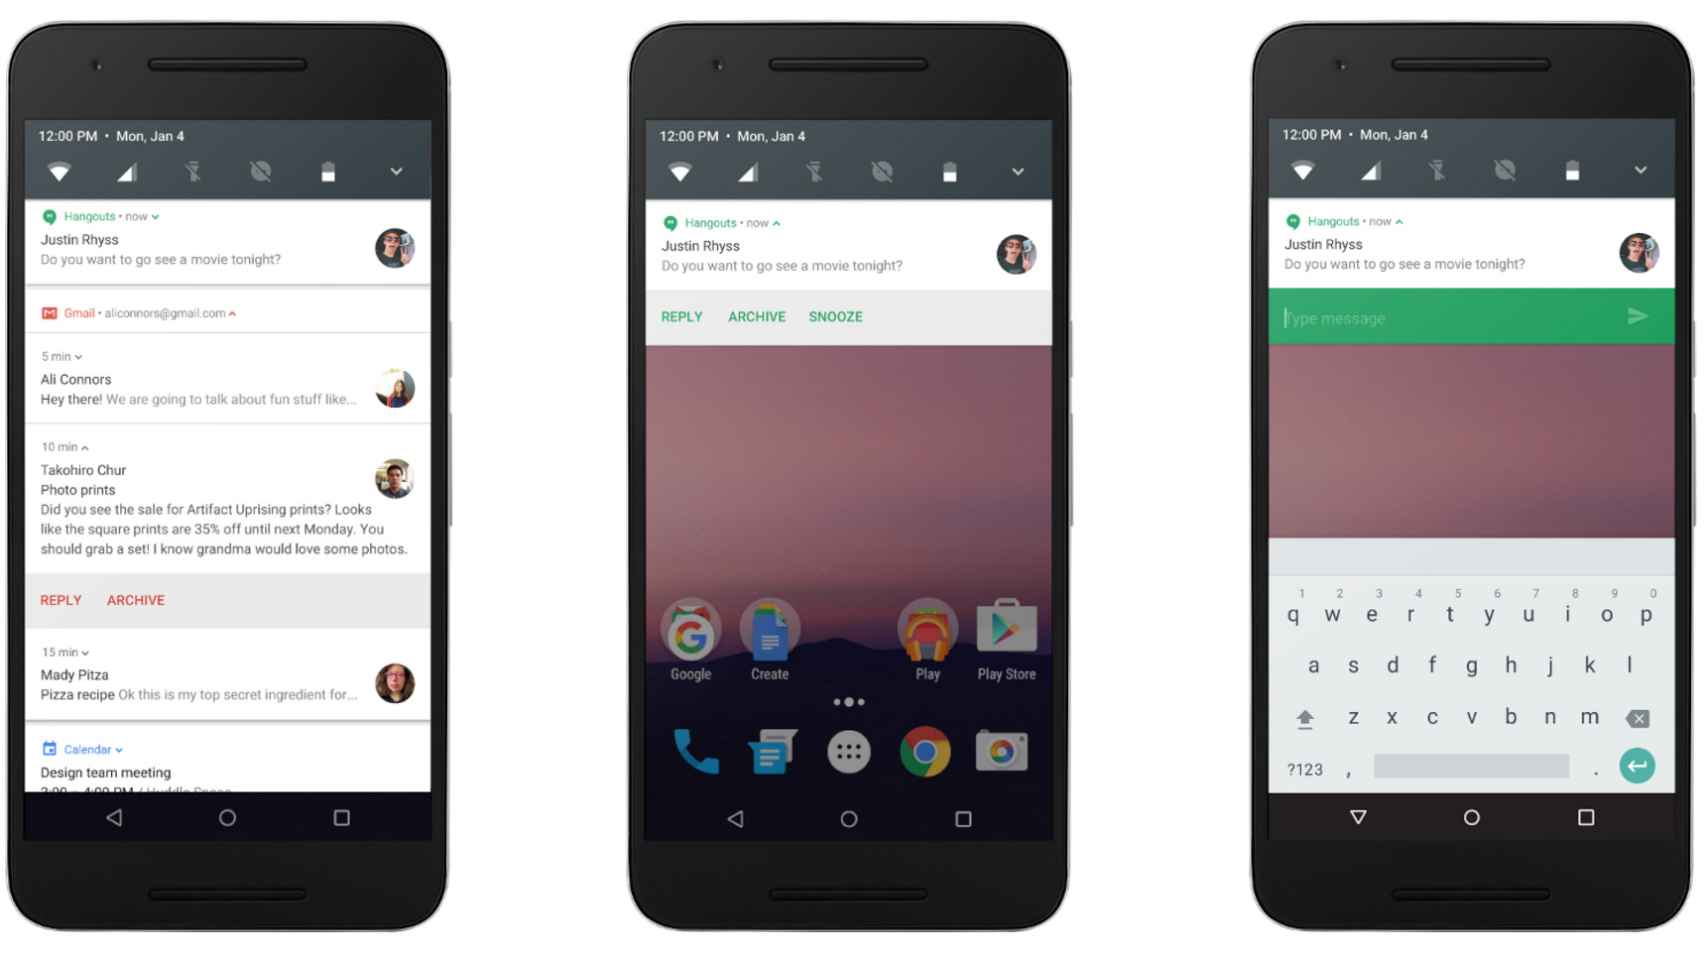 Novedades en las notificaciones en Android Nougat